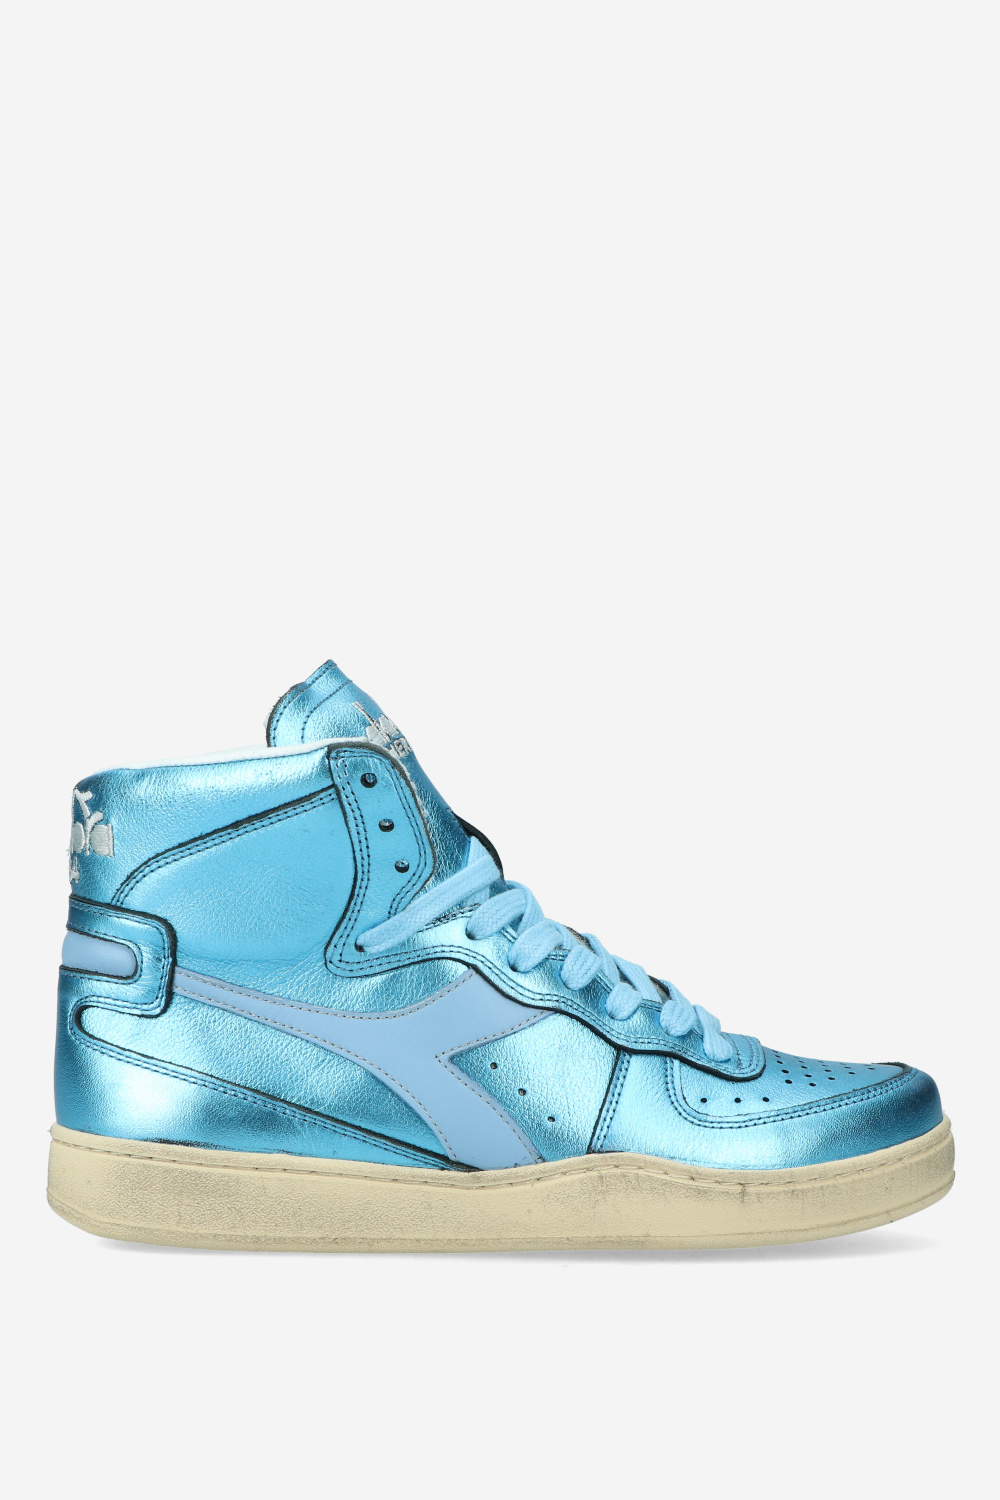 Diadora Sneakers Blue